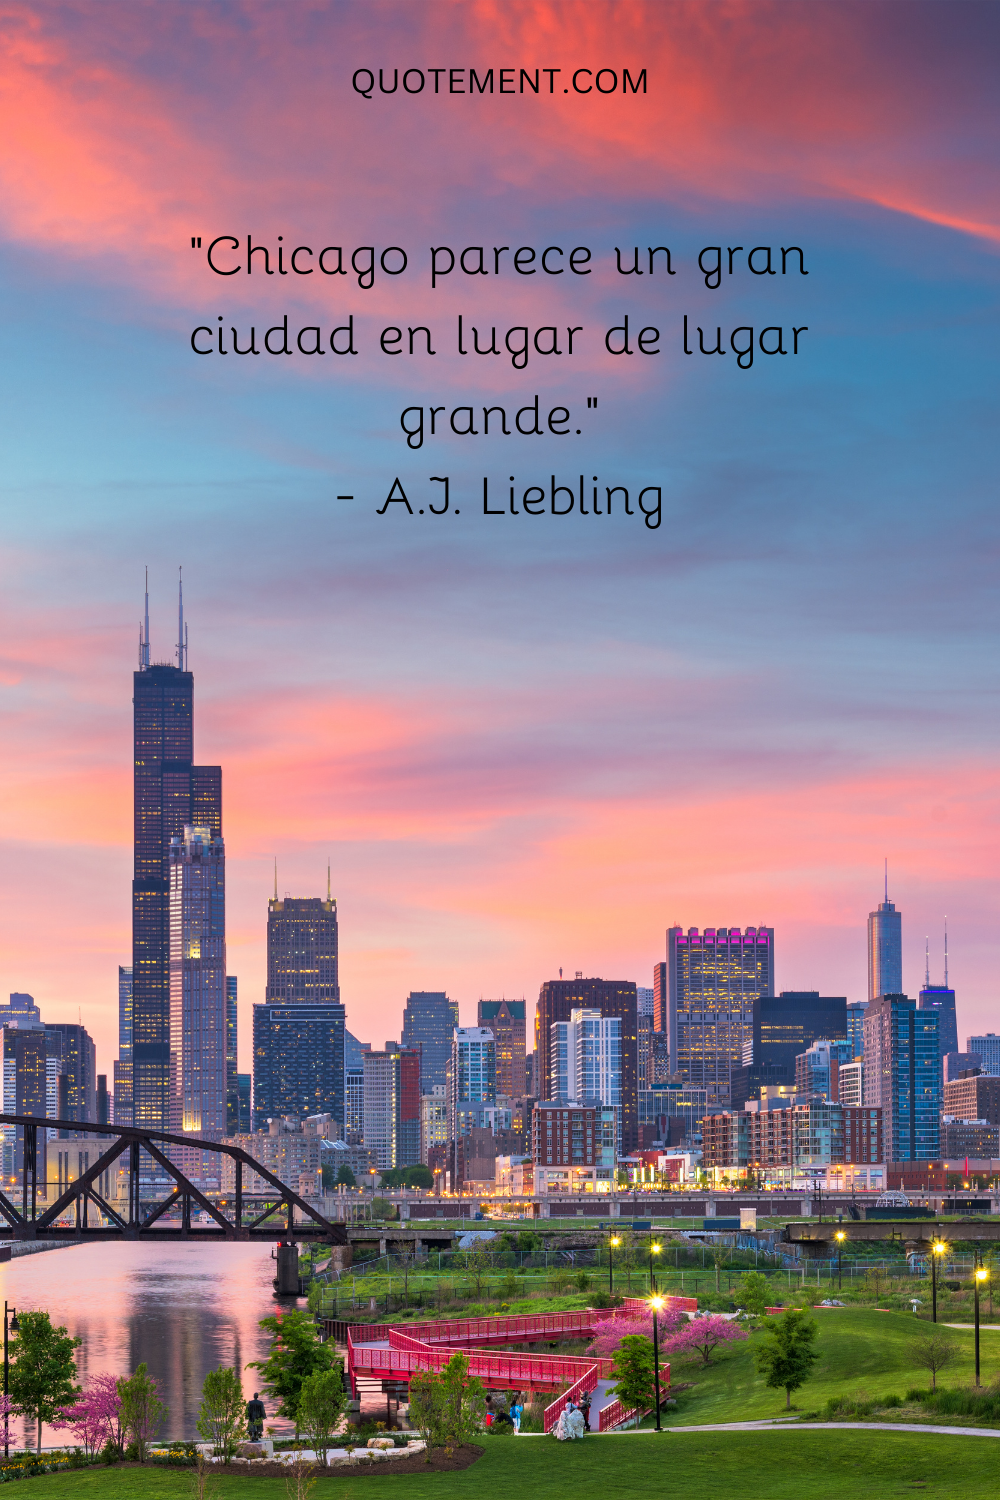 "Chicago parece una gran ciudad en lugar de simplemente un lugar grande". - A.J. Liebling